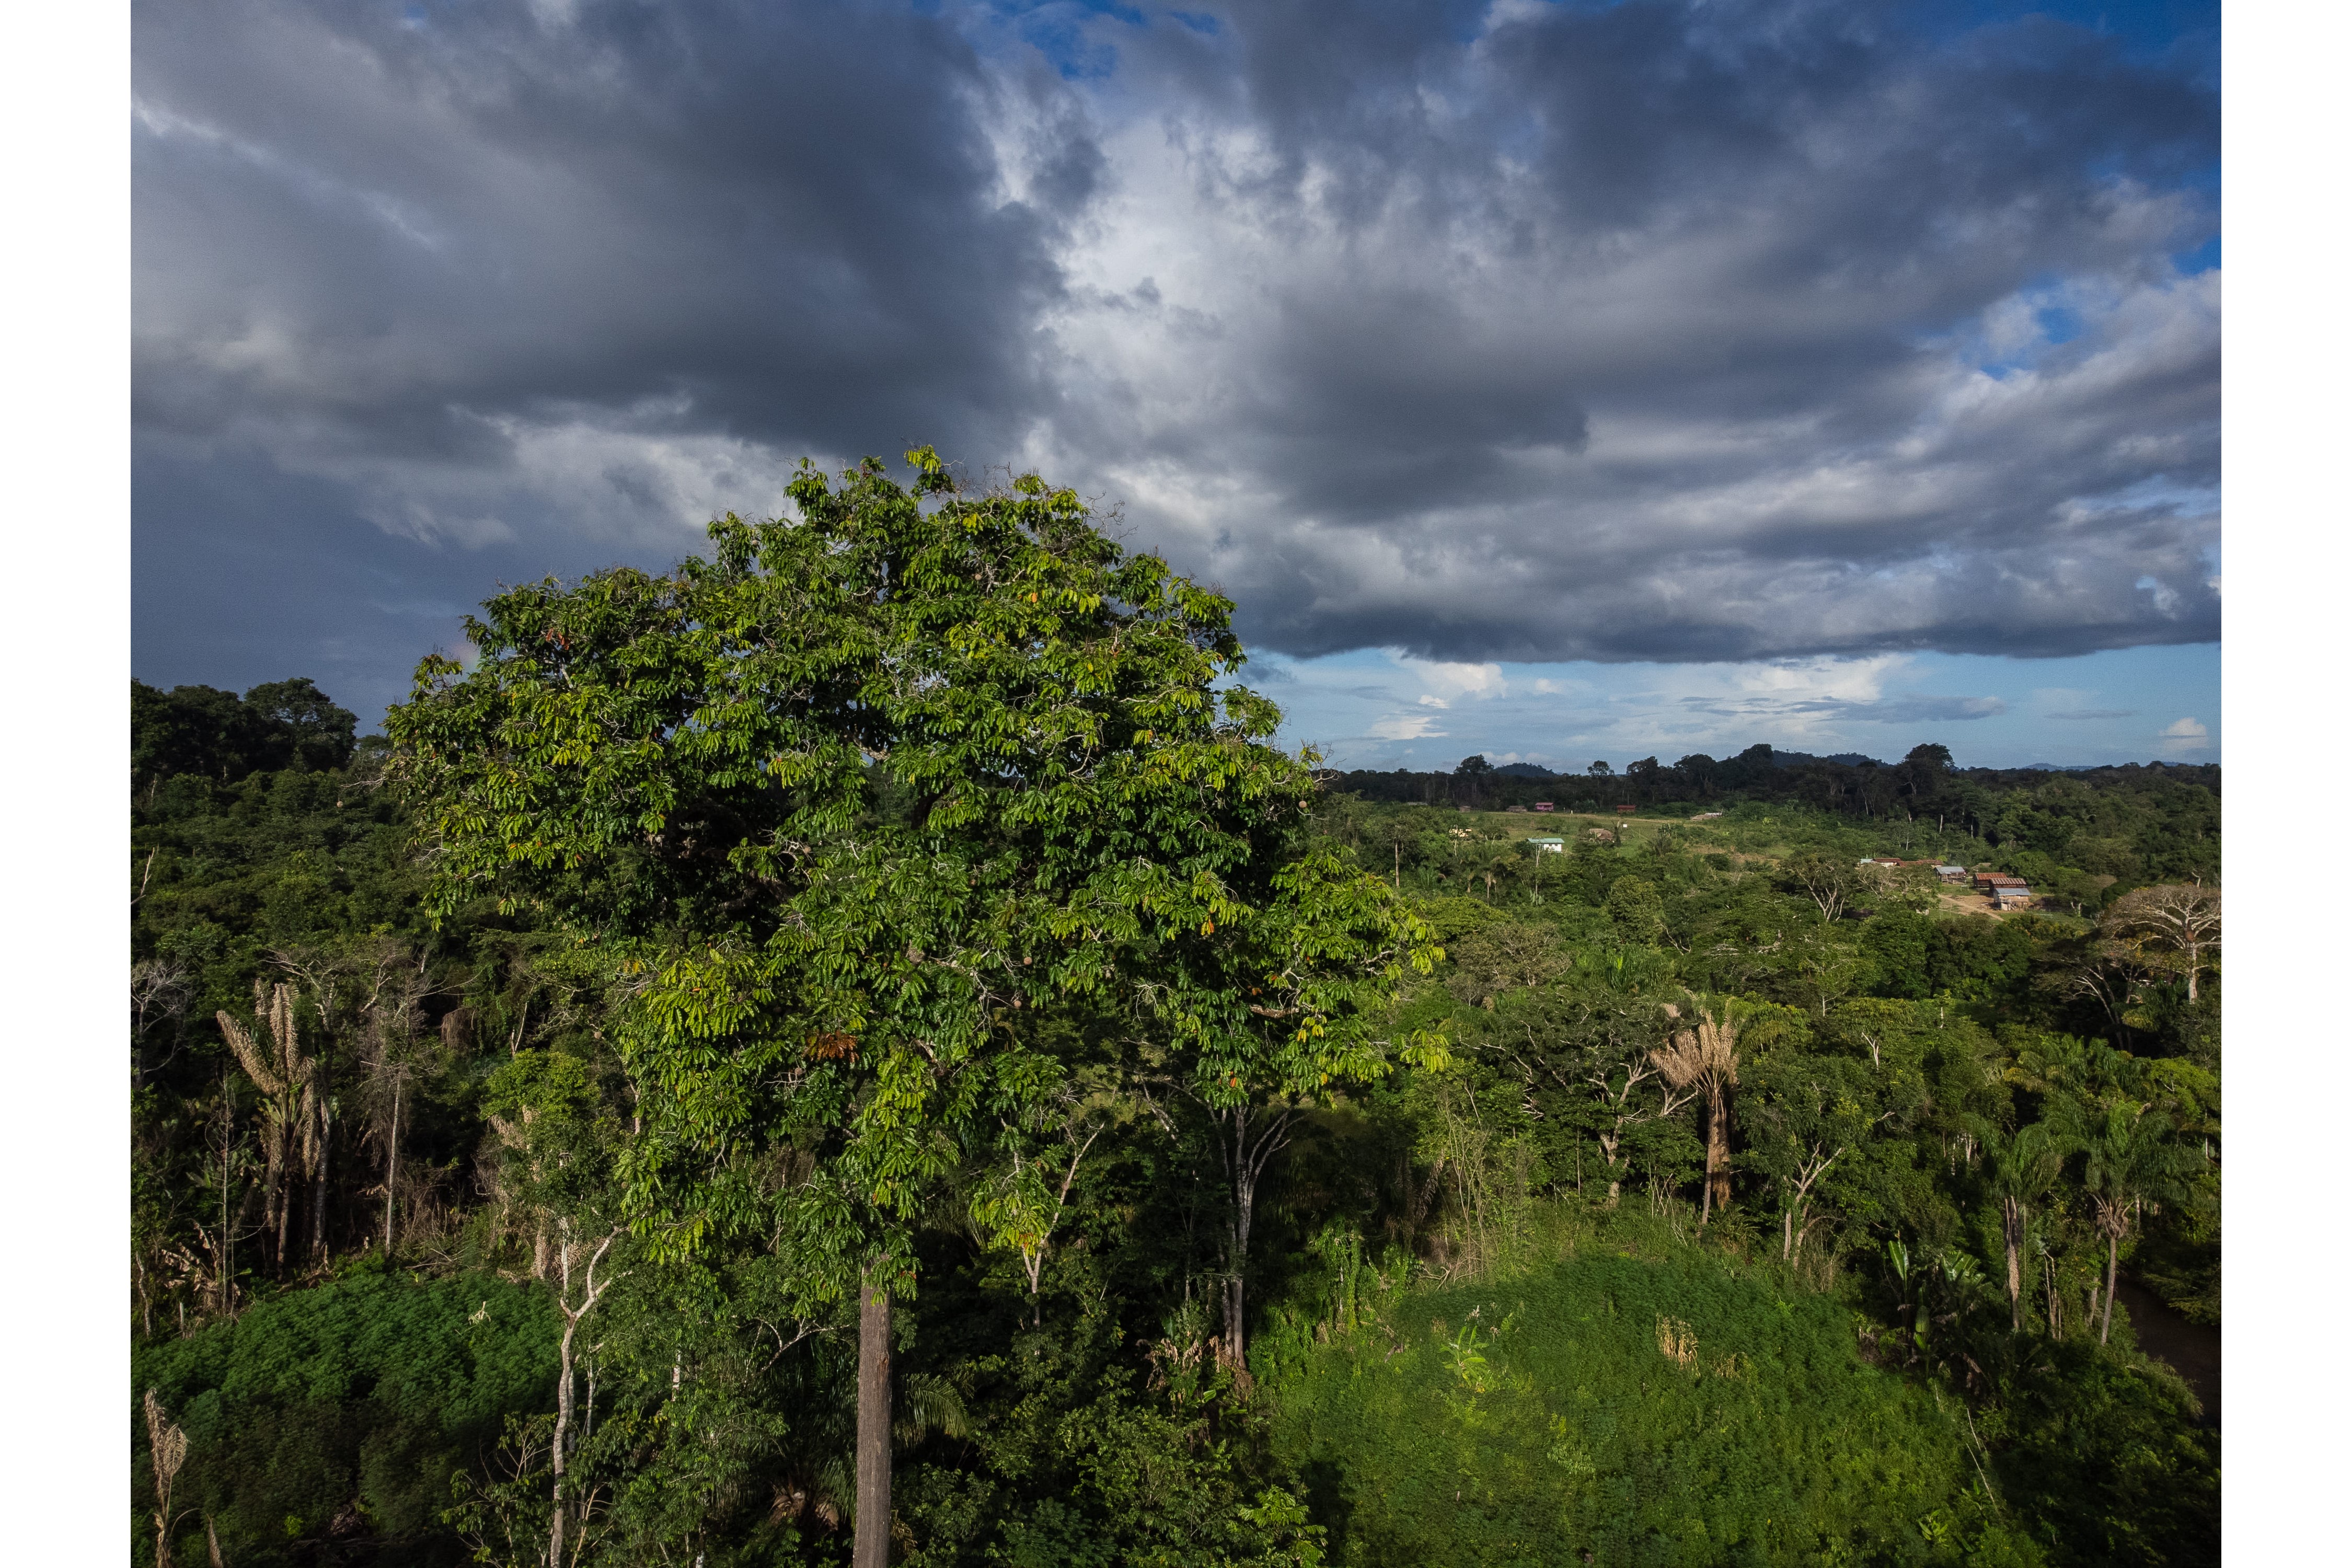 It sits amidst the dense Amazon rainforest.